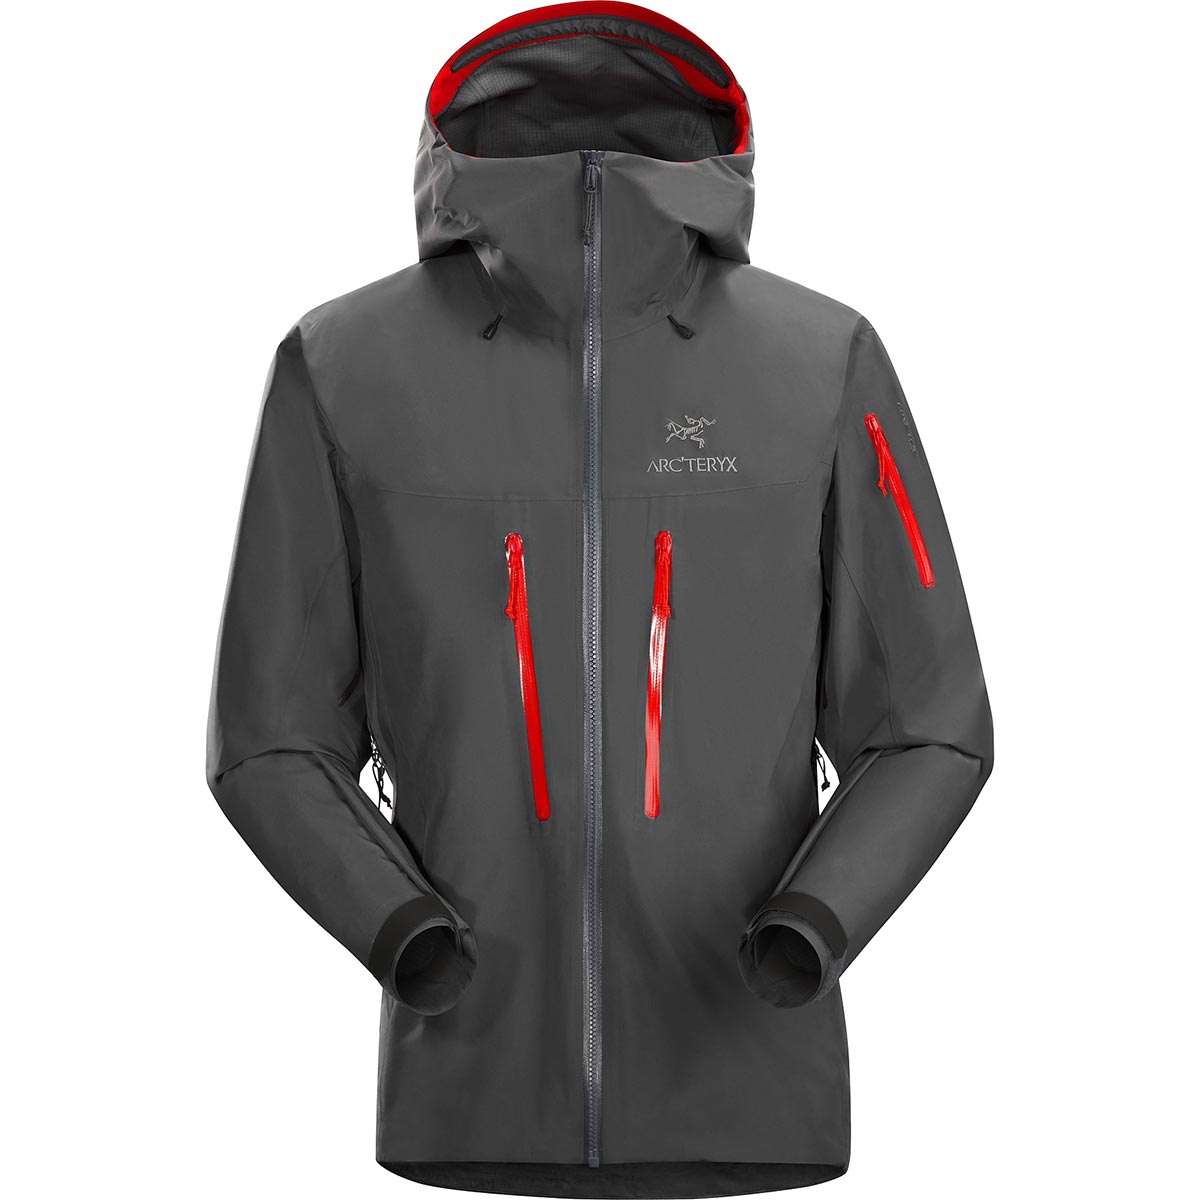 Alpha SV Jacket, men's, discontinued Spring 2019 colors